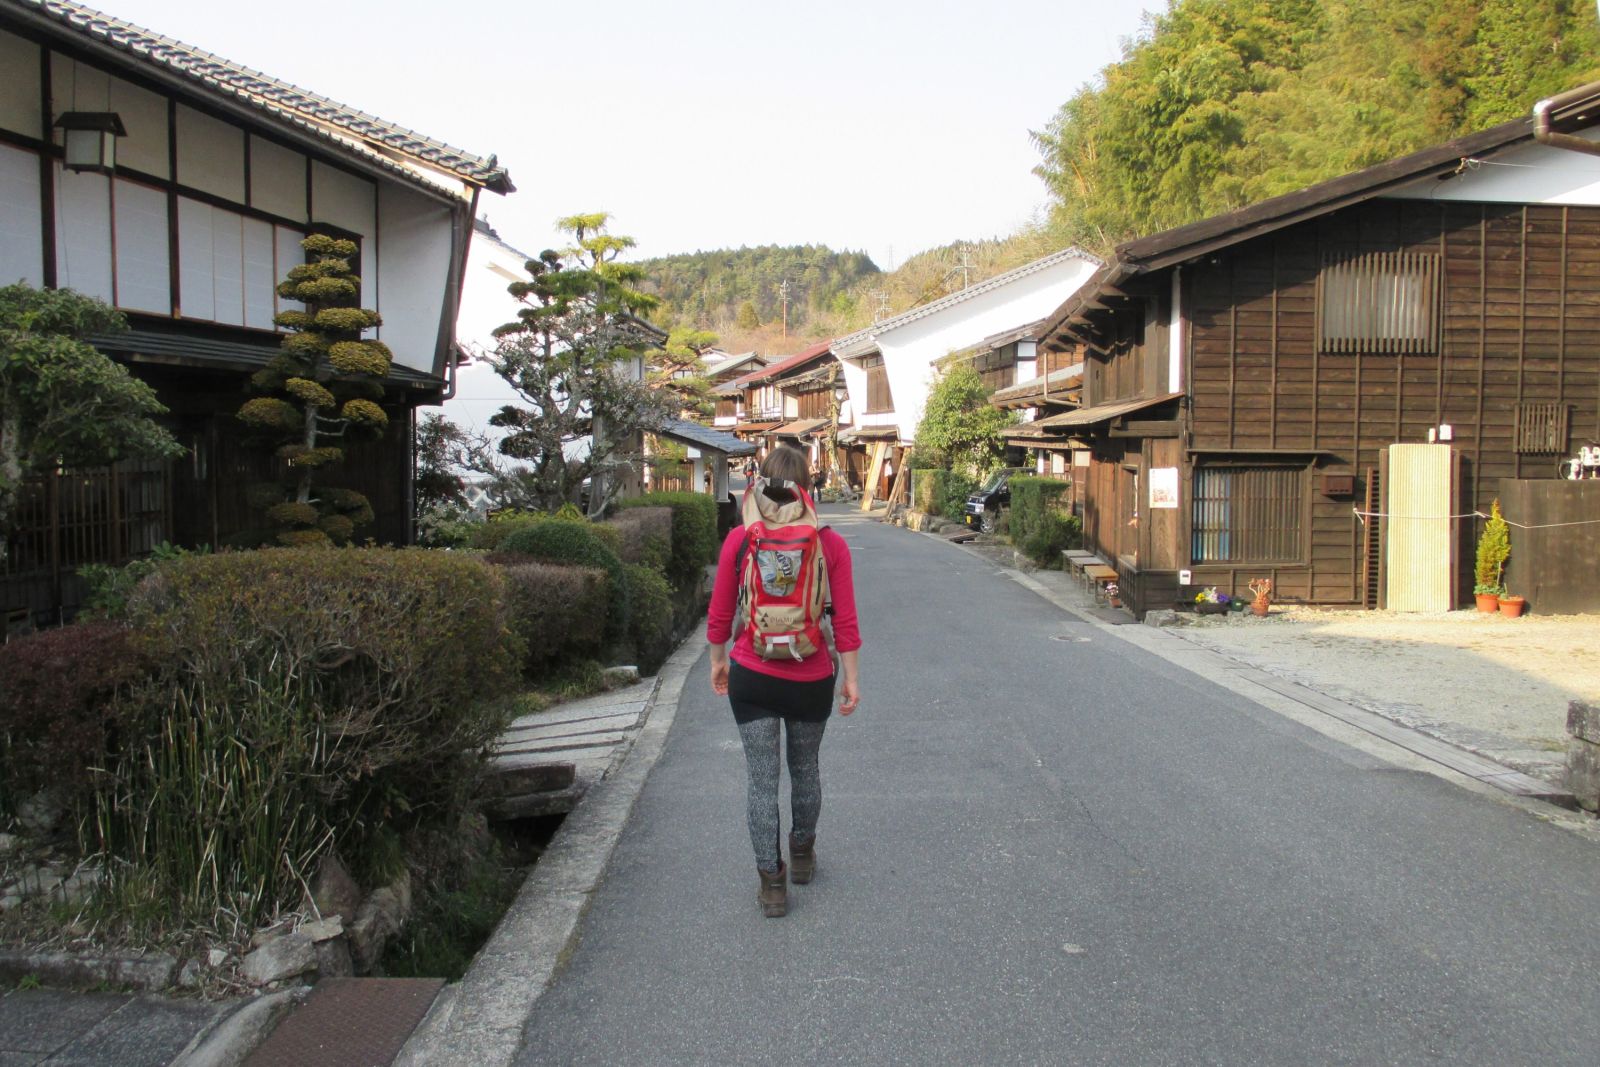 Der Nakasendo ist eine historische Handelsroute zwischen Tokio und Kyoto und verläuft hier durch ein wunderschön erhaltenes Dorf.